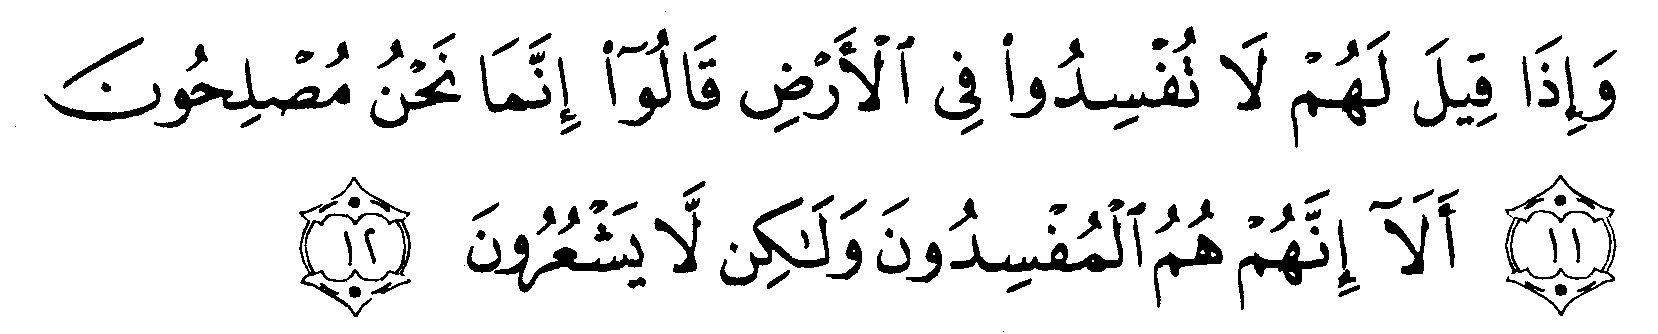 tulisan-arab-surat-albaqarah-ayat-11-12.jpg